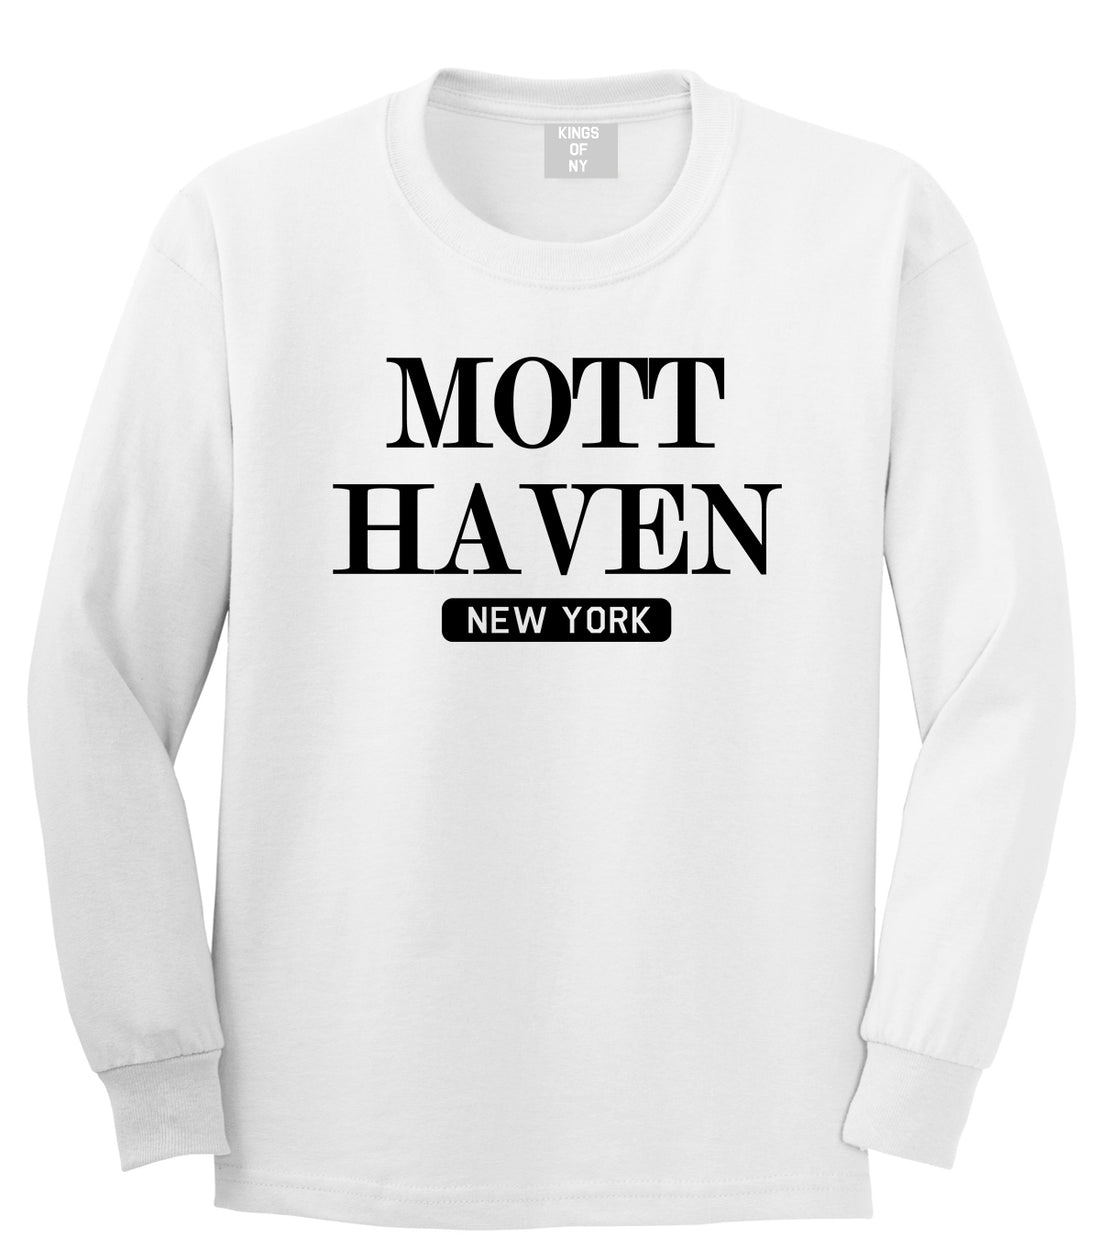 Mott Haven New York Mens Long Sleeve T-Shirt White